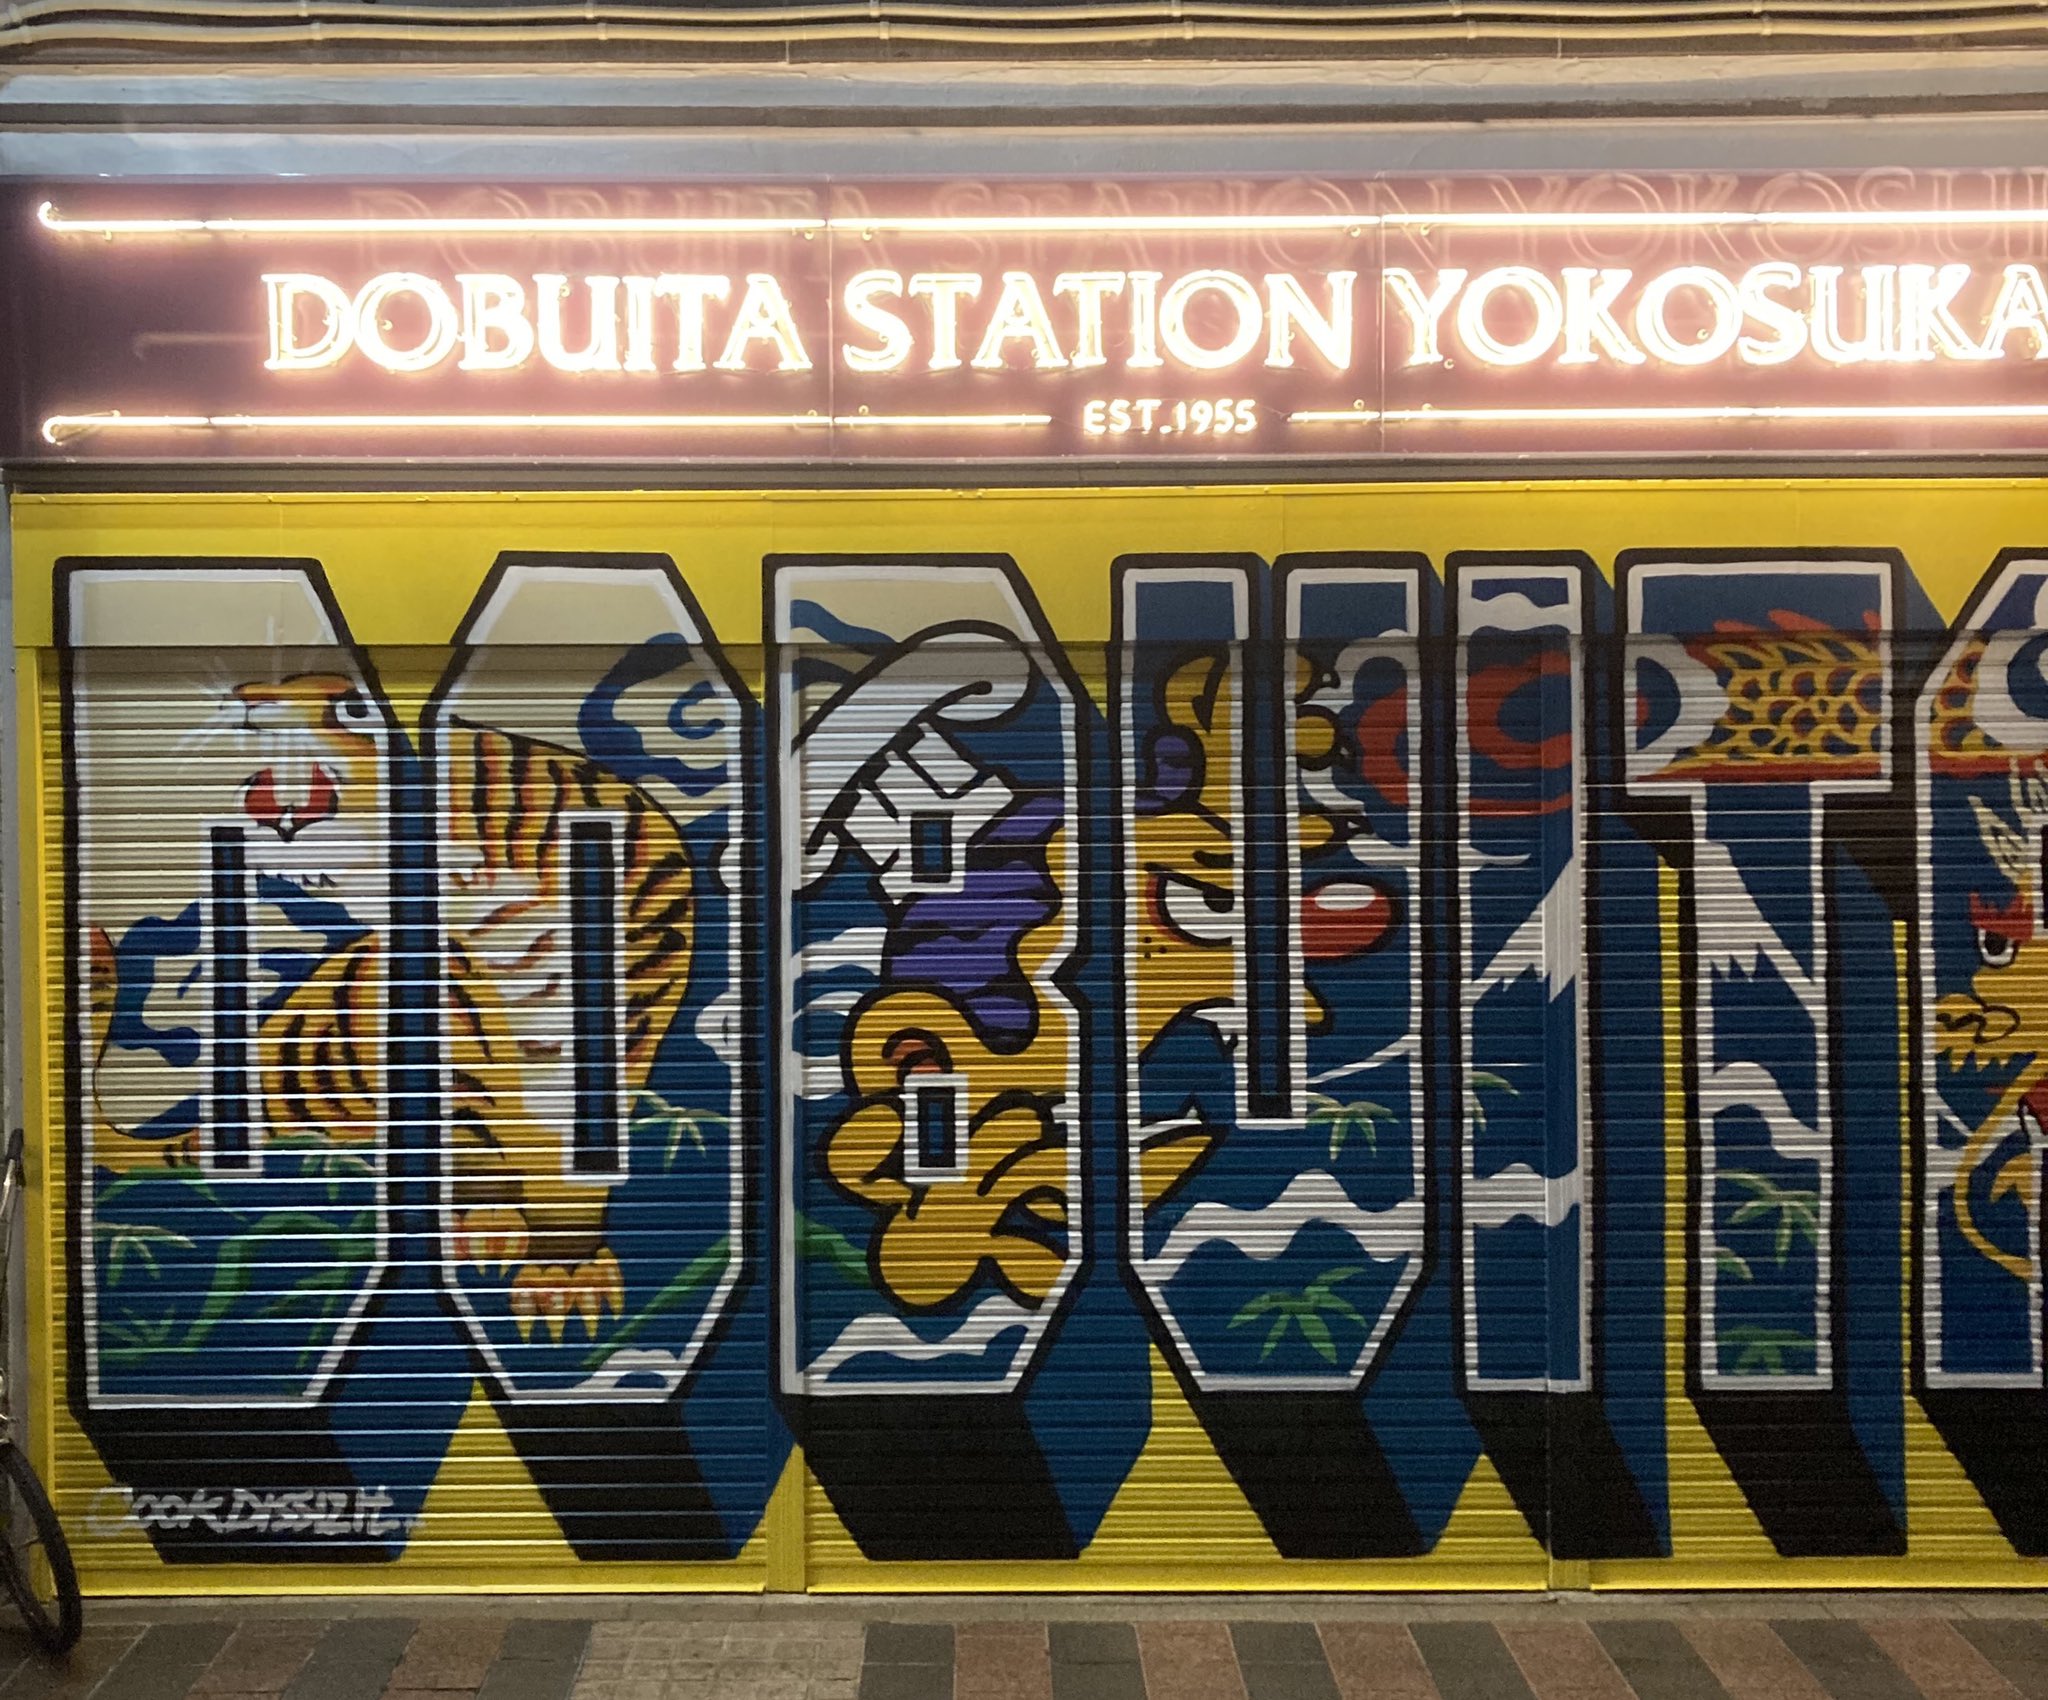 横須賀市観光案内所 こんにちは 今日の横須賀は晴れ ドブ板通りにある ドブイタステーションのシャッターアートがとても カッコイイんです その上のネオン管サインも素敵 ドブ板通りにお越しの際はチェックしてみて下さいね T Co